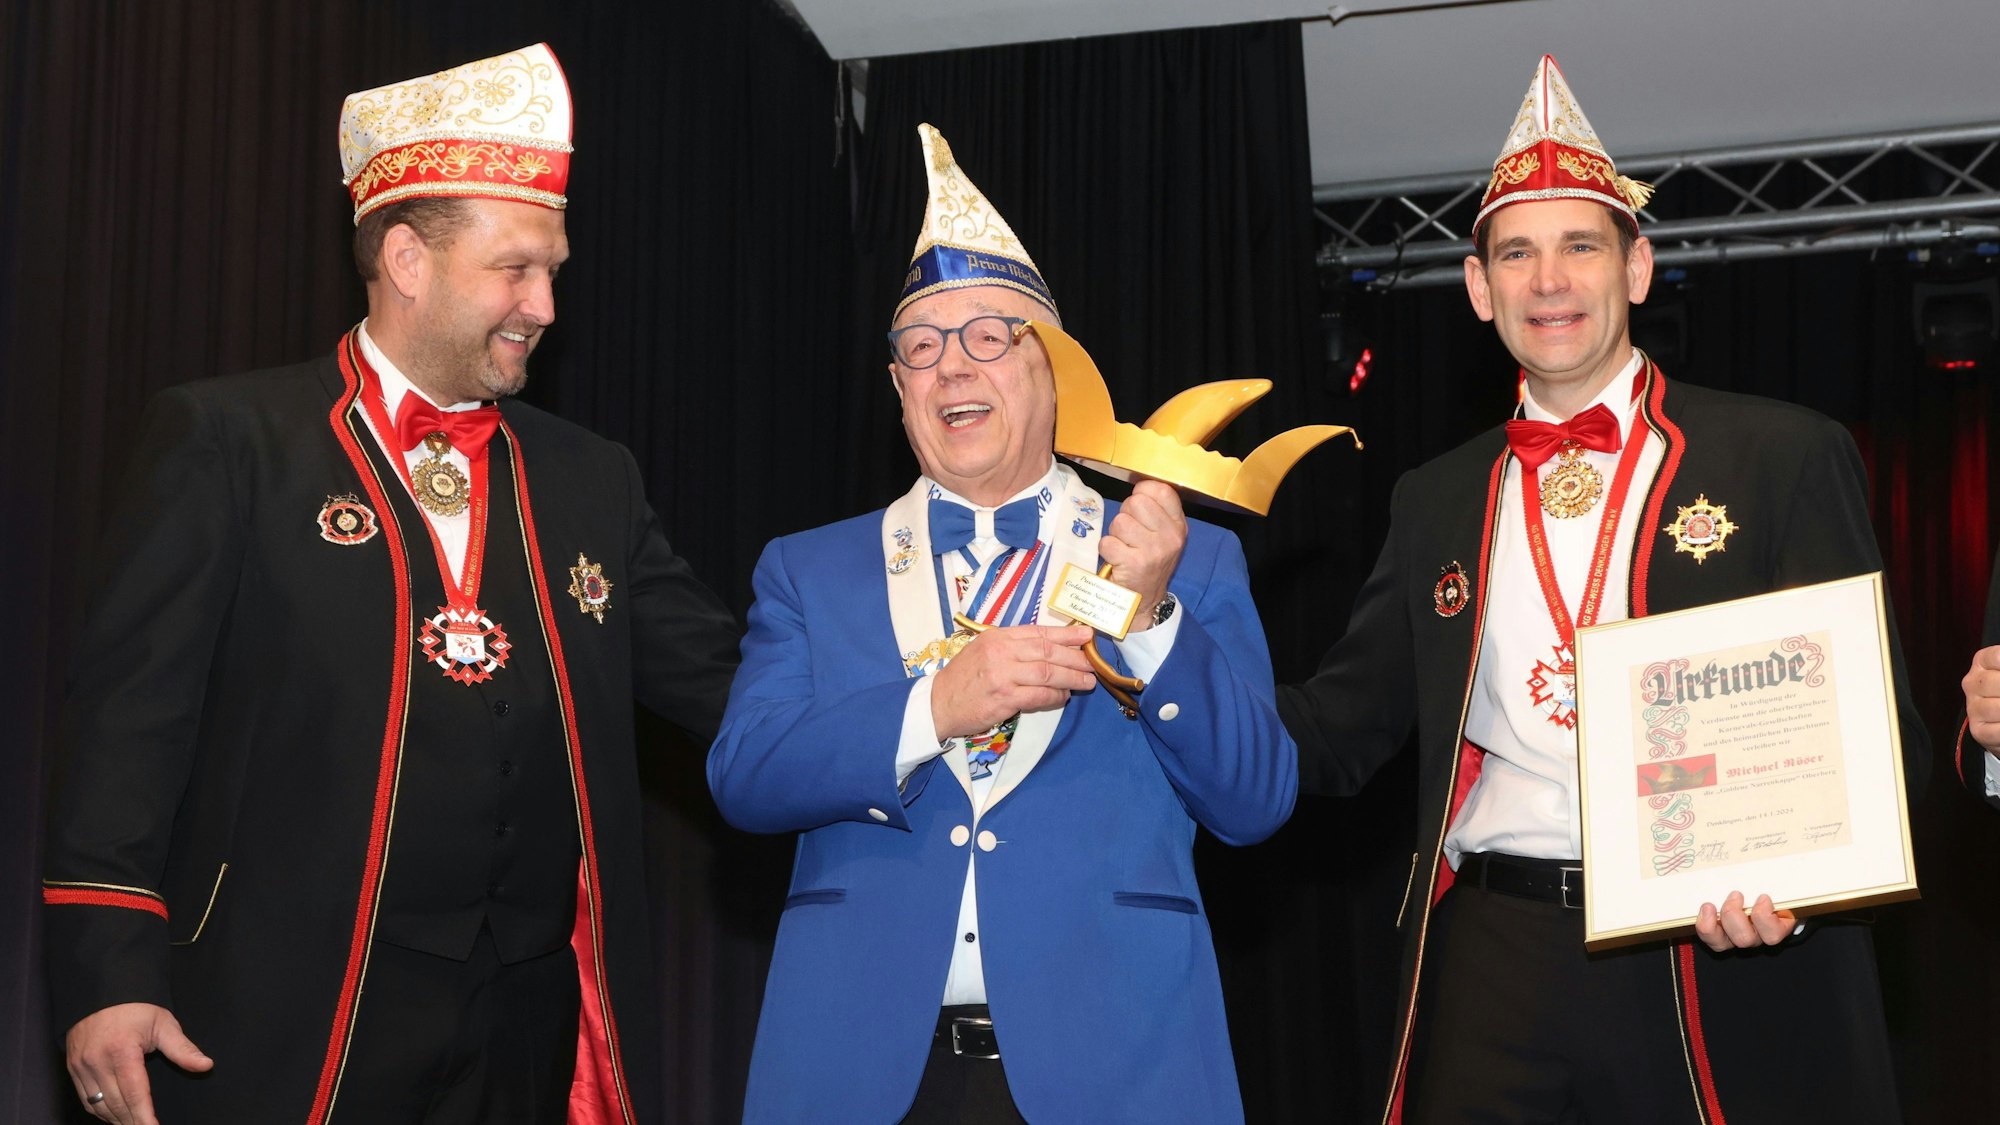 Drei Karnevalisten stehen beisammen. Der Mann in der Mitte hält eine Auszeichnung in Form einer goldenen Narrenkappe in den Händen.